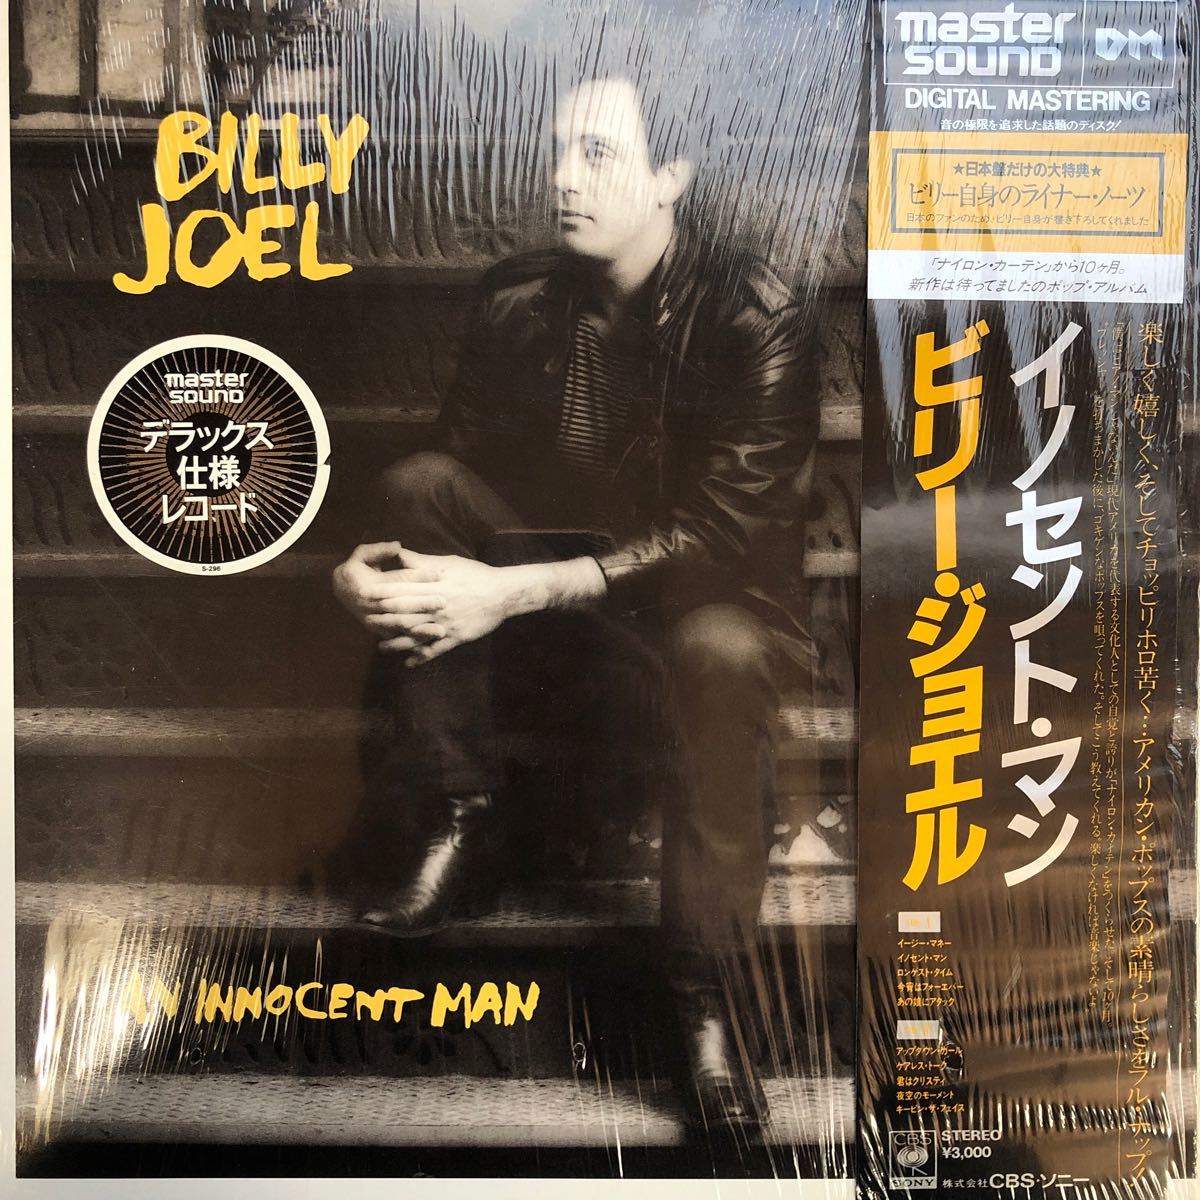 master sound Billy Joel ... *  ... ... *  ... ... ссылка  включено  ... включено LP  пластинка  5 шт.   вышеуказанное   выигрыш лота  ... доставка бесплатно Z